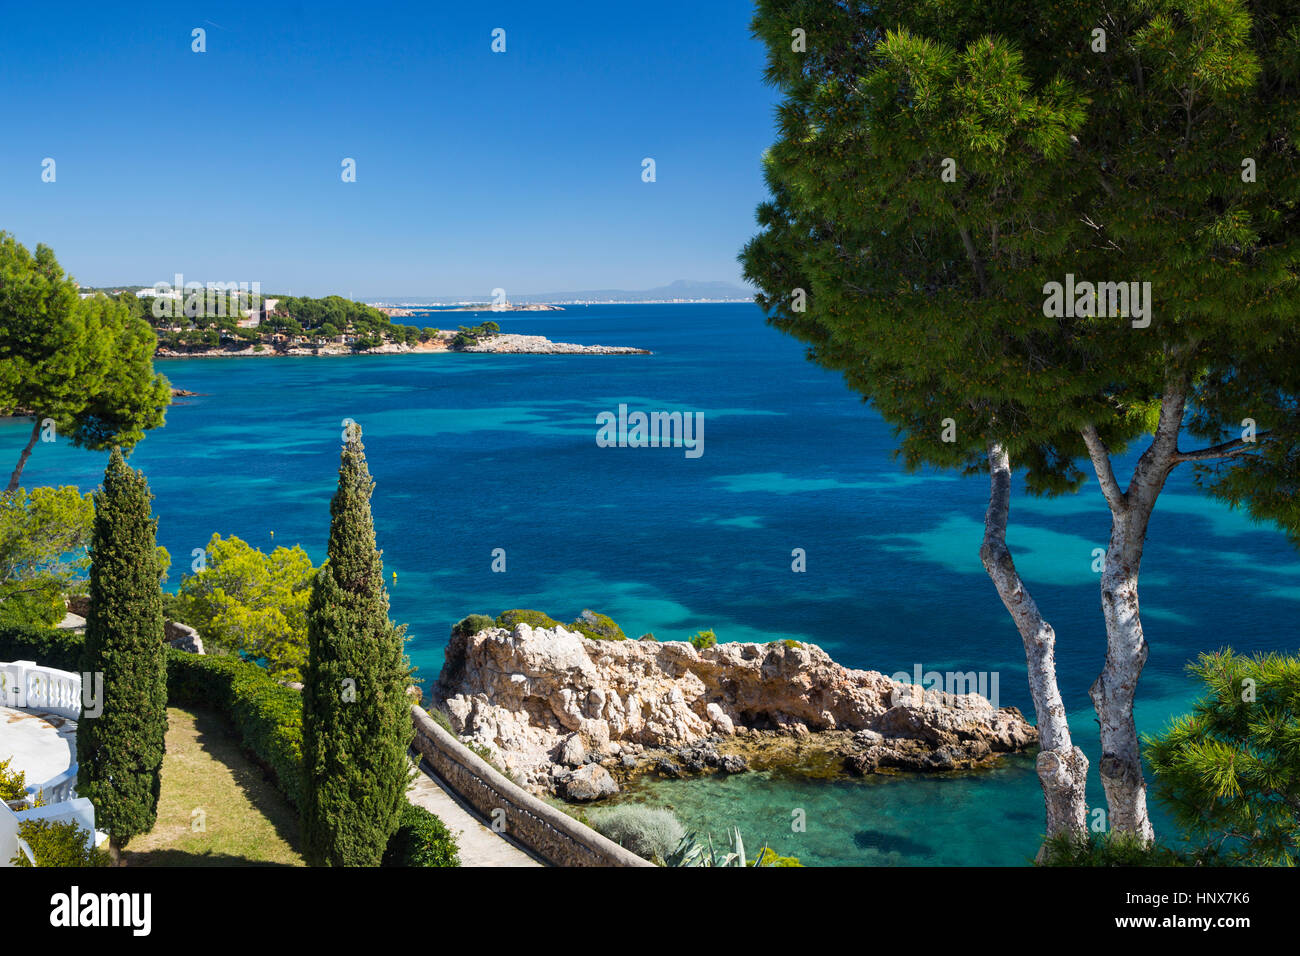 Vista elevada de costa y mar azul, Calvià, Mallorca, España Foto de stock